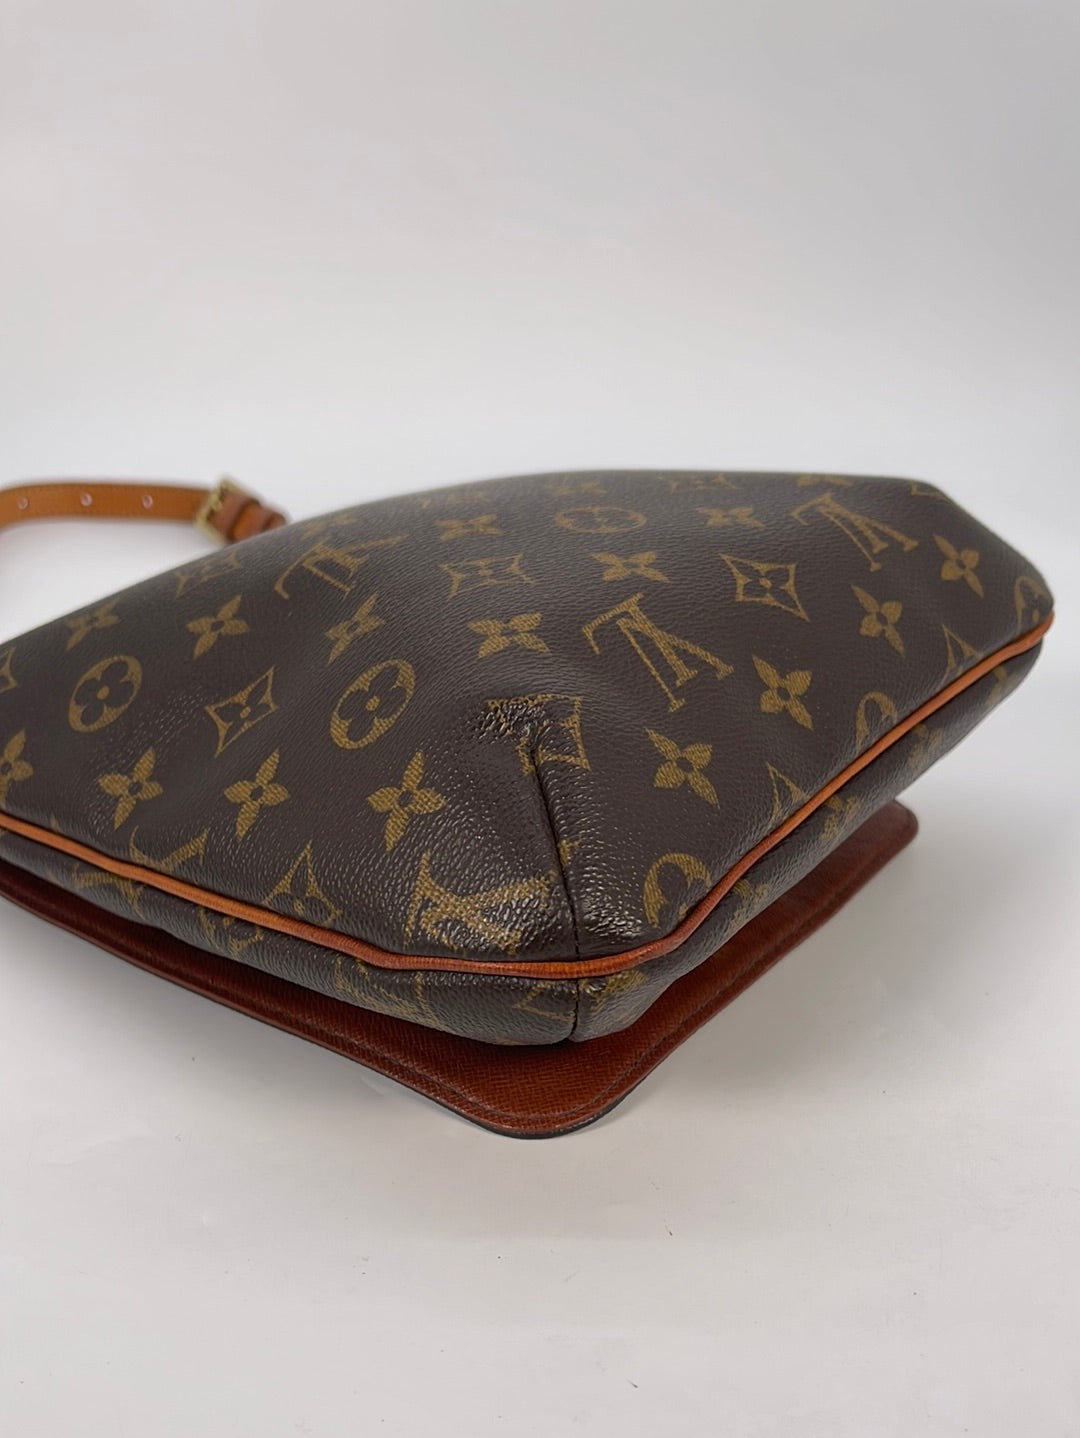 Louis Vuitton Mirage Musette Bag - Brown Shoulder Bags, Handbags - LOU45997